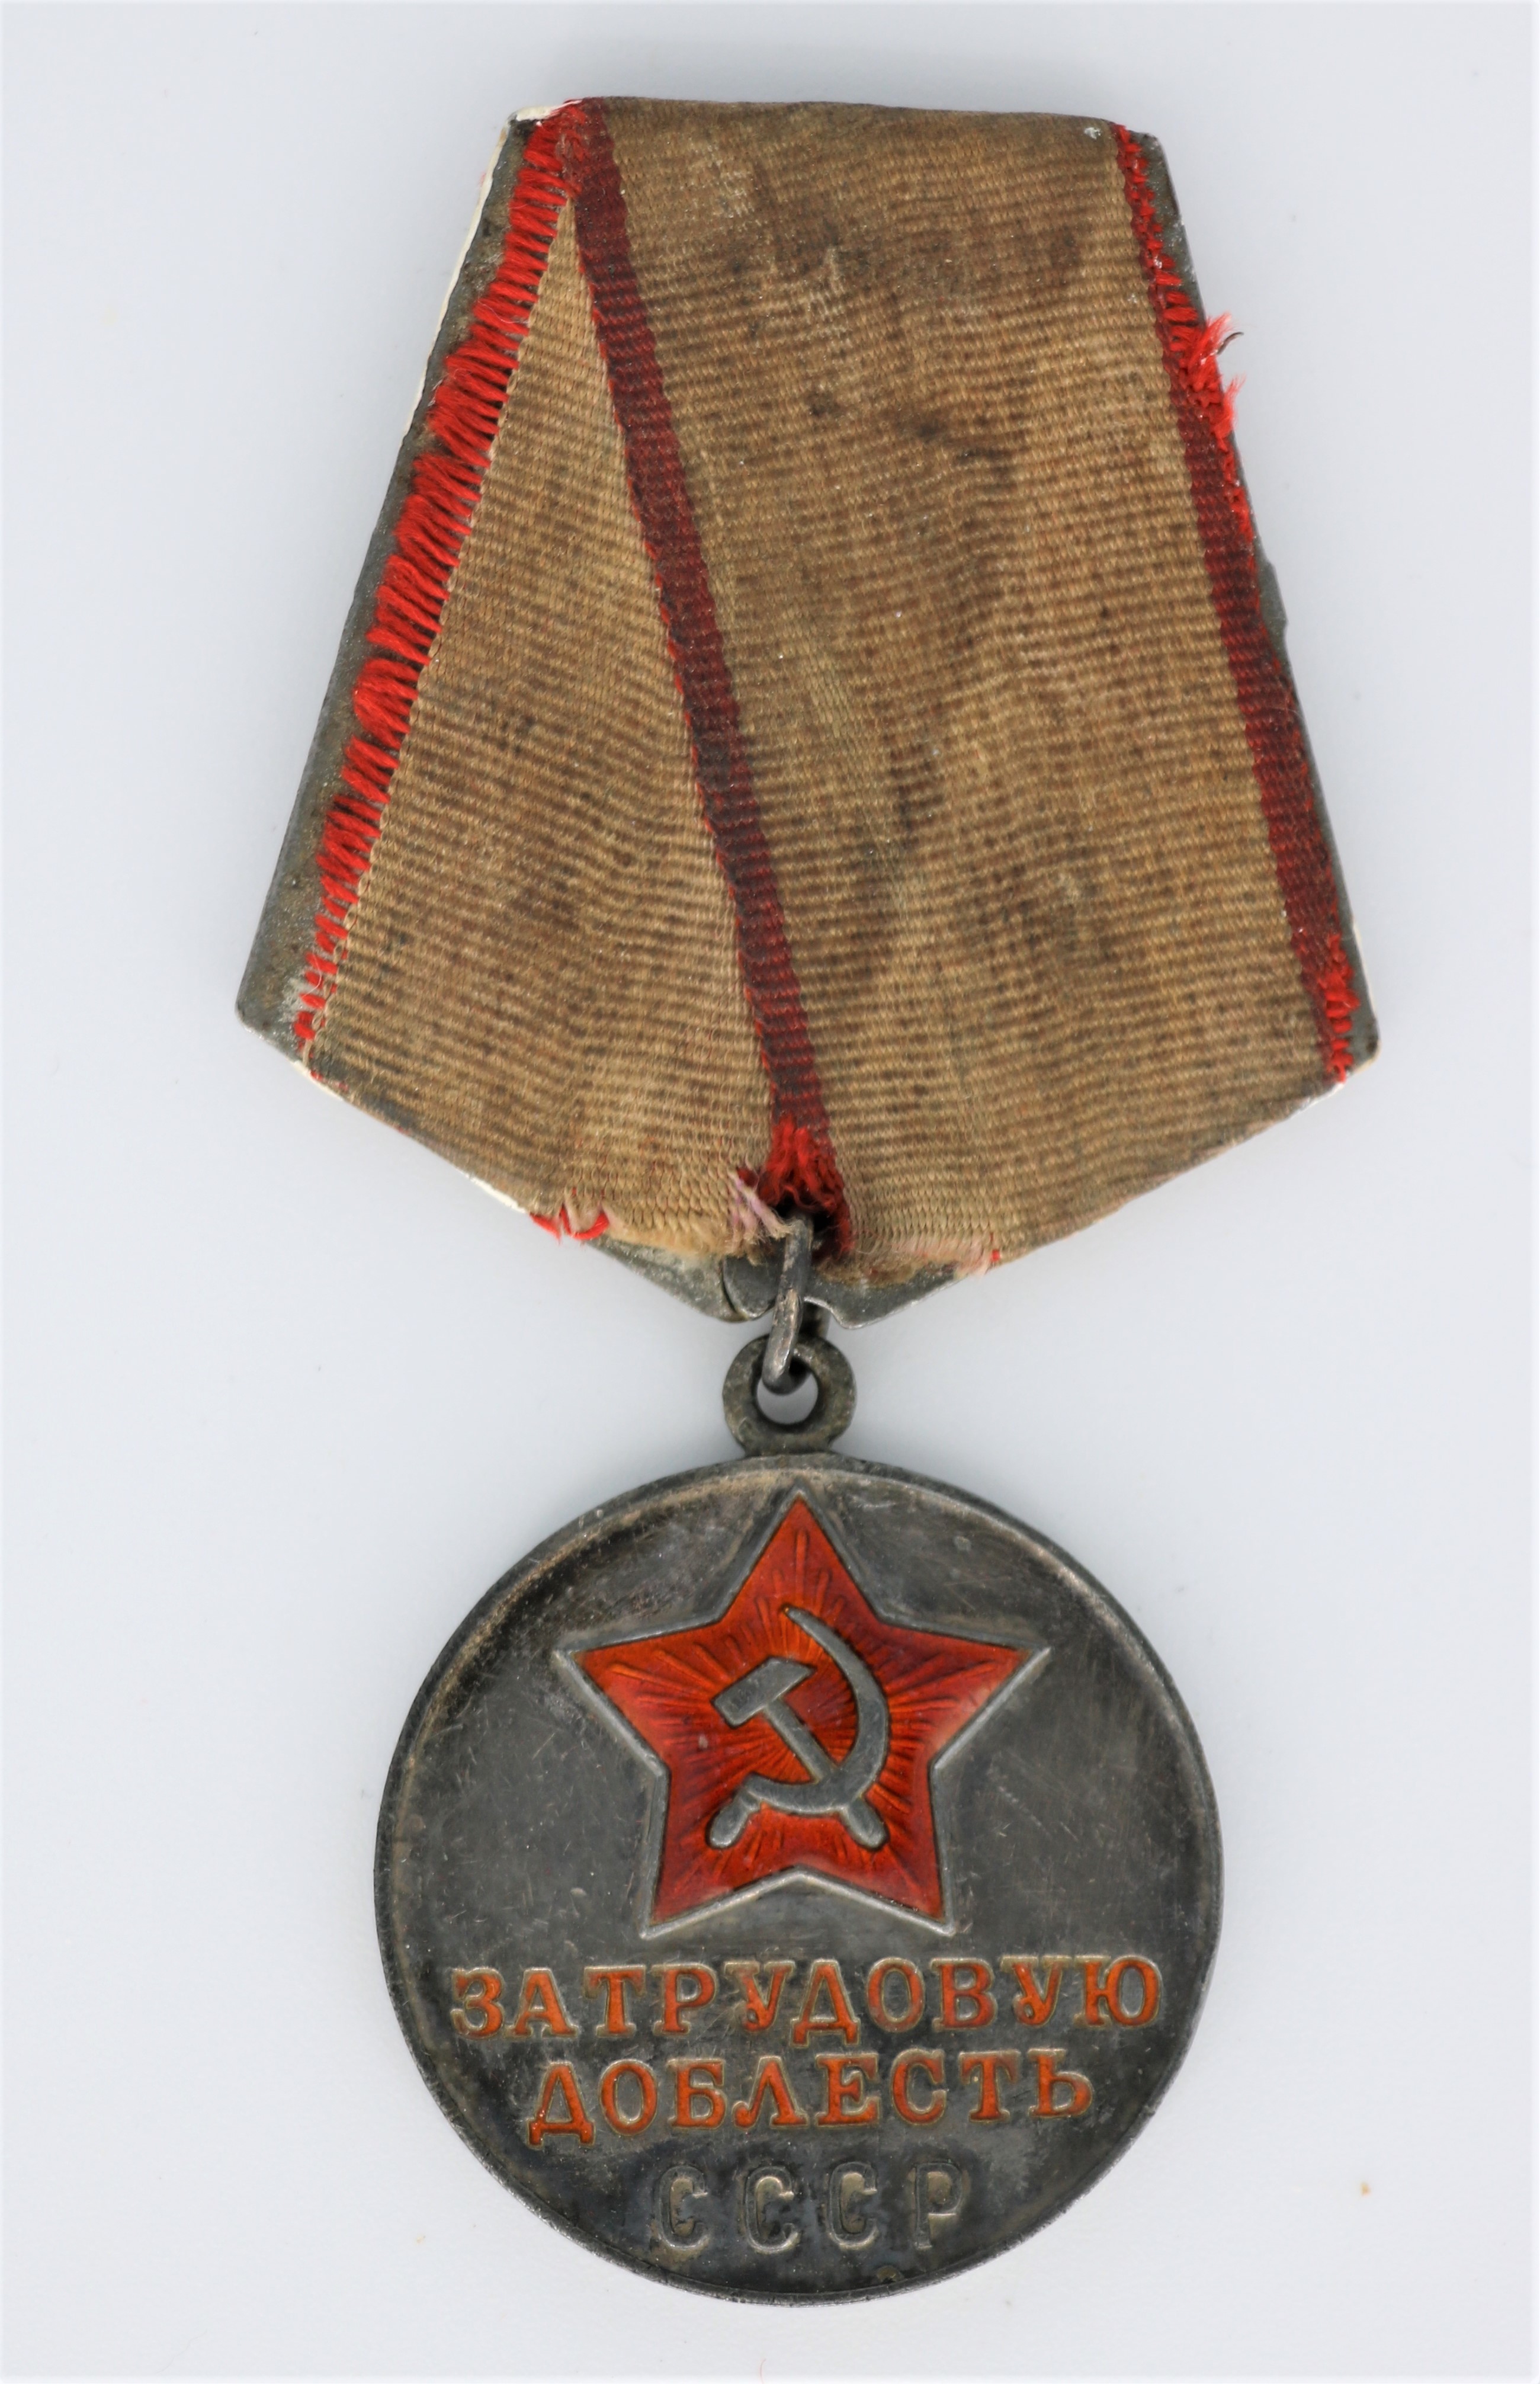 Medaille: "Für heldenmütige Arbeit" (Museum Berlin-Karlshorst CC BY-NC-SA)